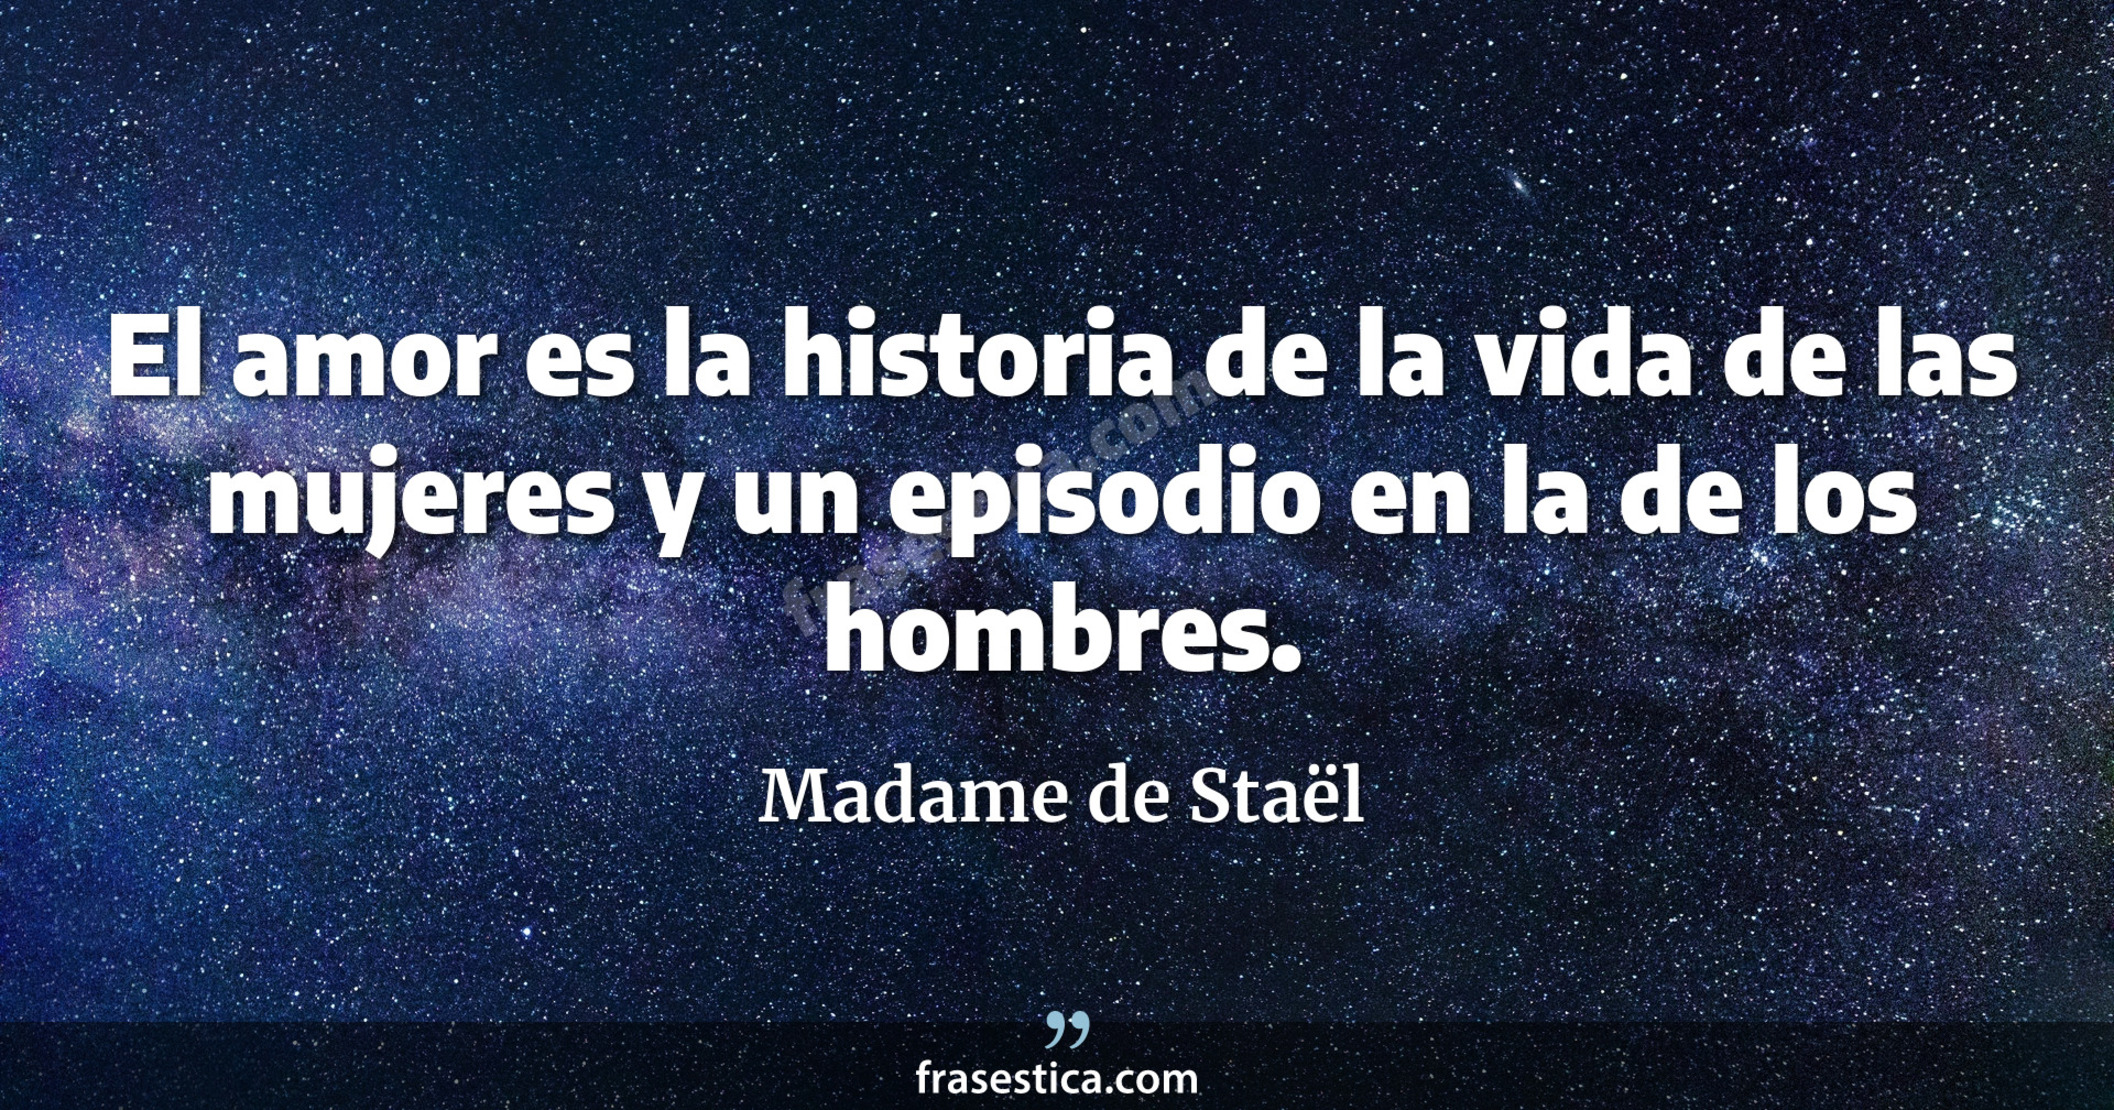 El amor es la historia de la vida de las mujeres y un episodio en la de los hombres. - Madame de Staël